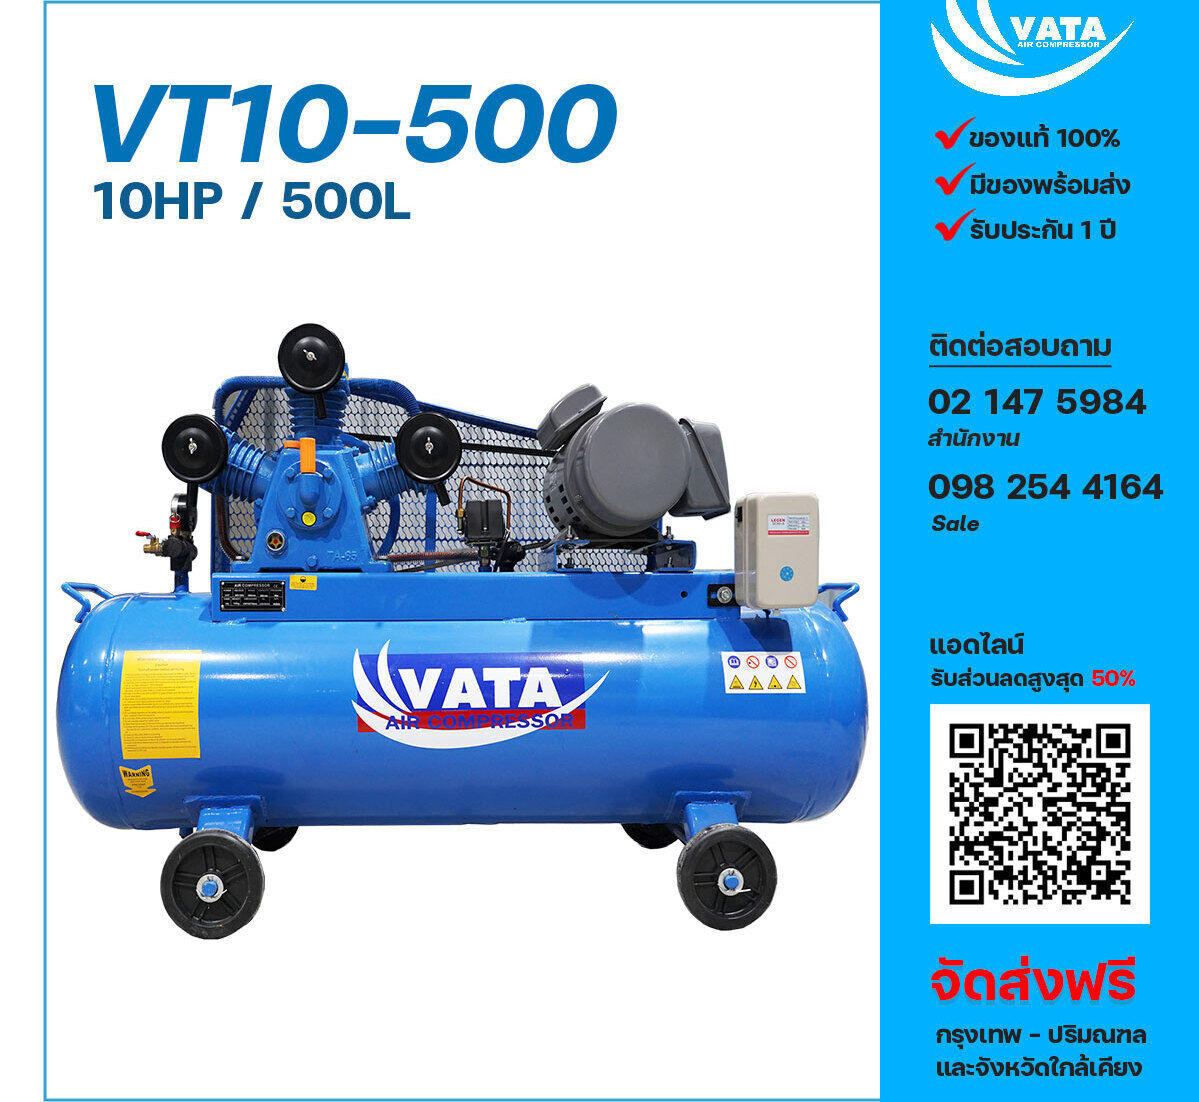 ปั๊มลมวาตะ VATA VT10-500 380V ปั๊มลมลูกสูบ ขนาด 3 สูบ 10 แรงม้า 500 ลิตร VATA พร้อมมอเตอร์ ไฟ 380V ส่งฟรี กรุงเทพฯ-ปริมณฑล รับประกัน 1 ปี